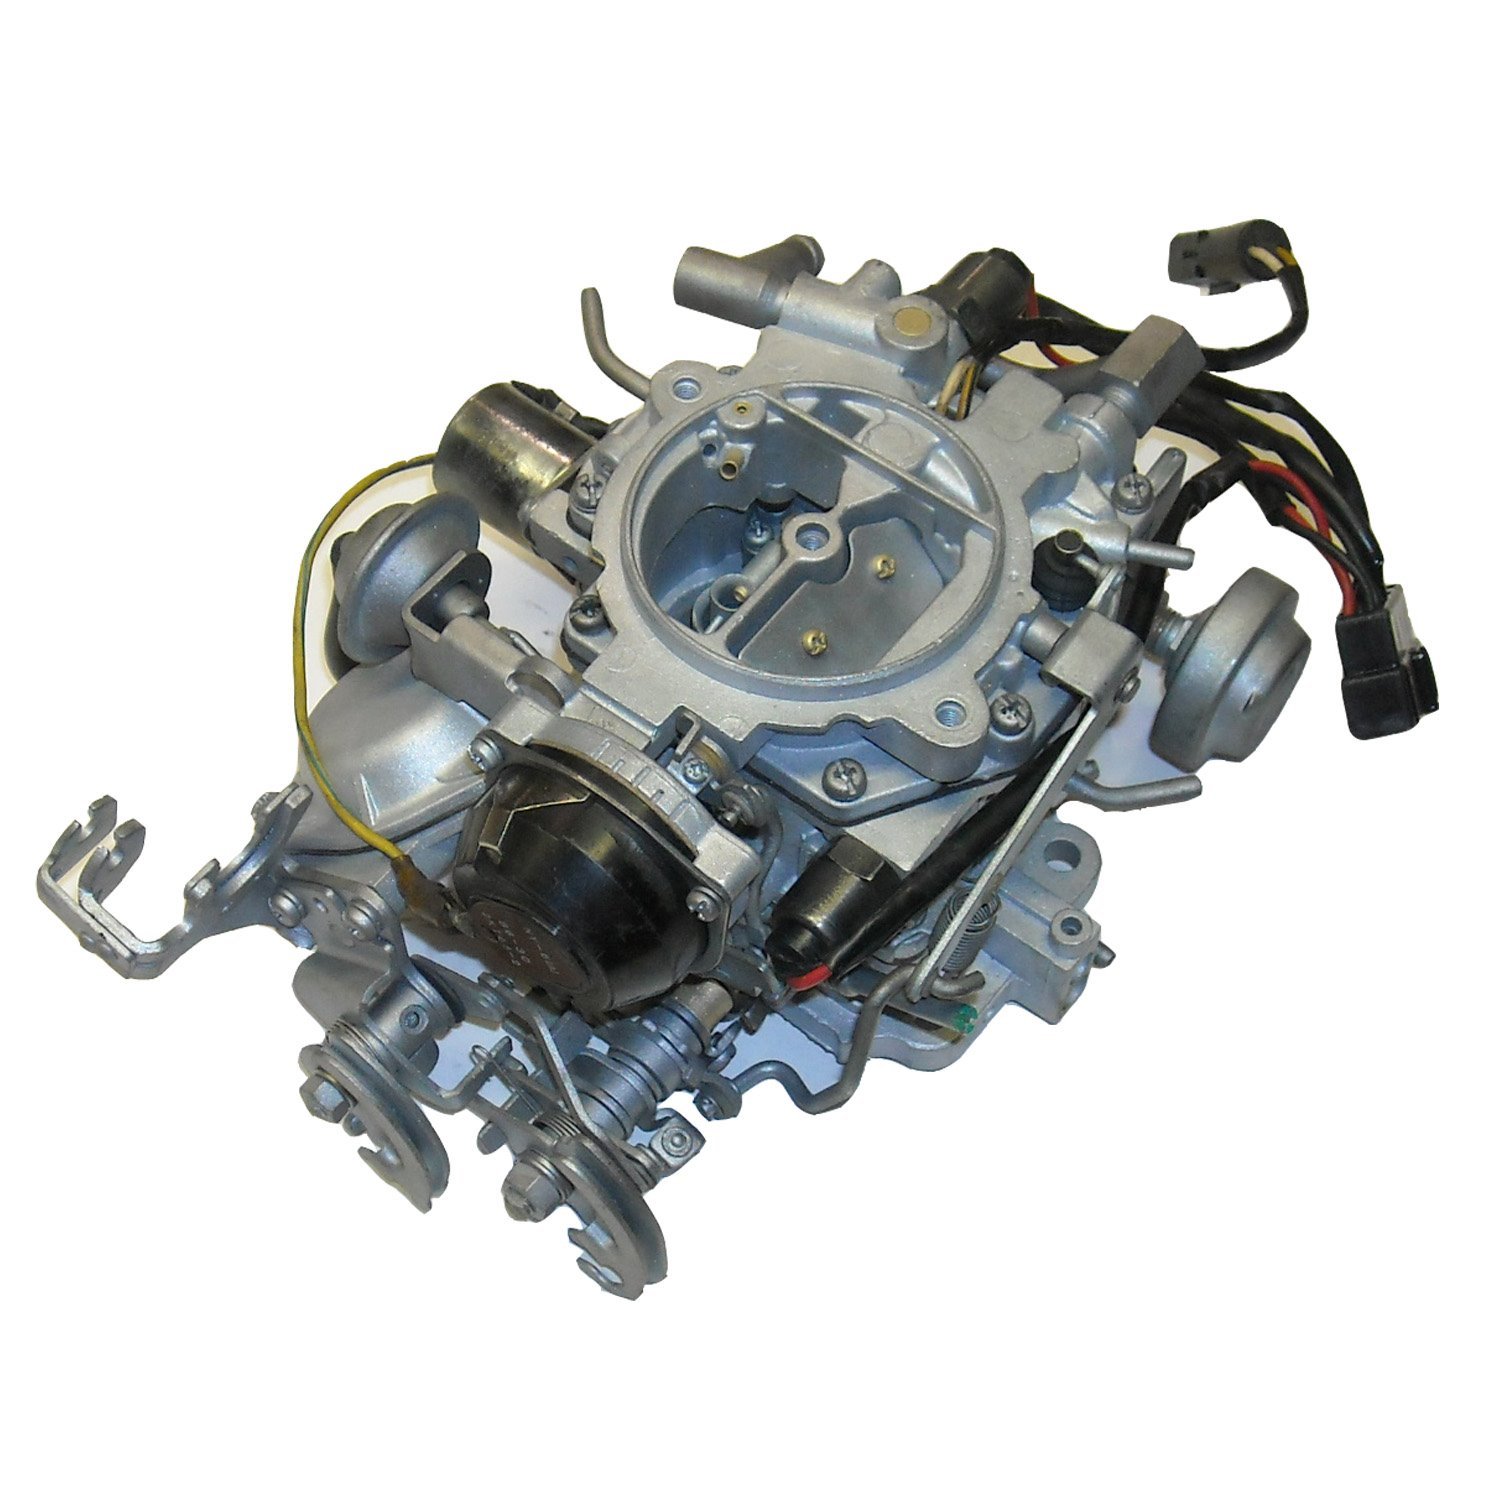 URC-M650 Nikki Remanufactured Carburetor